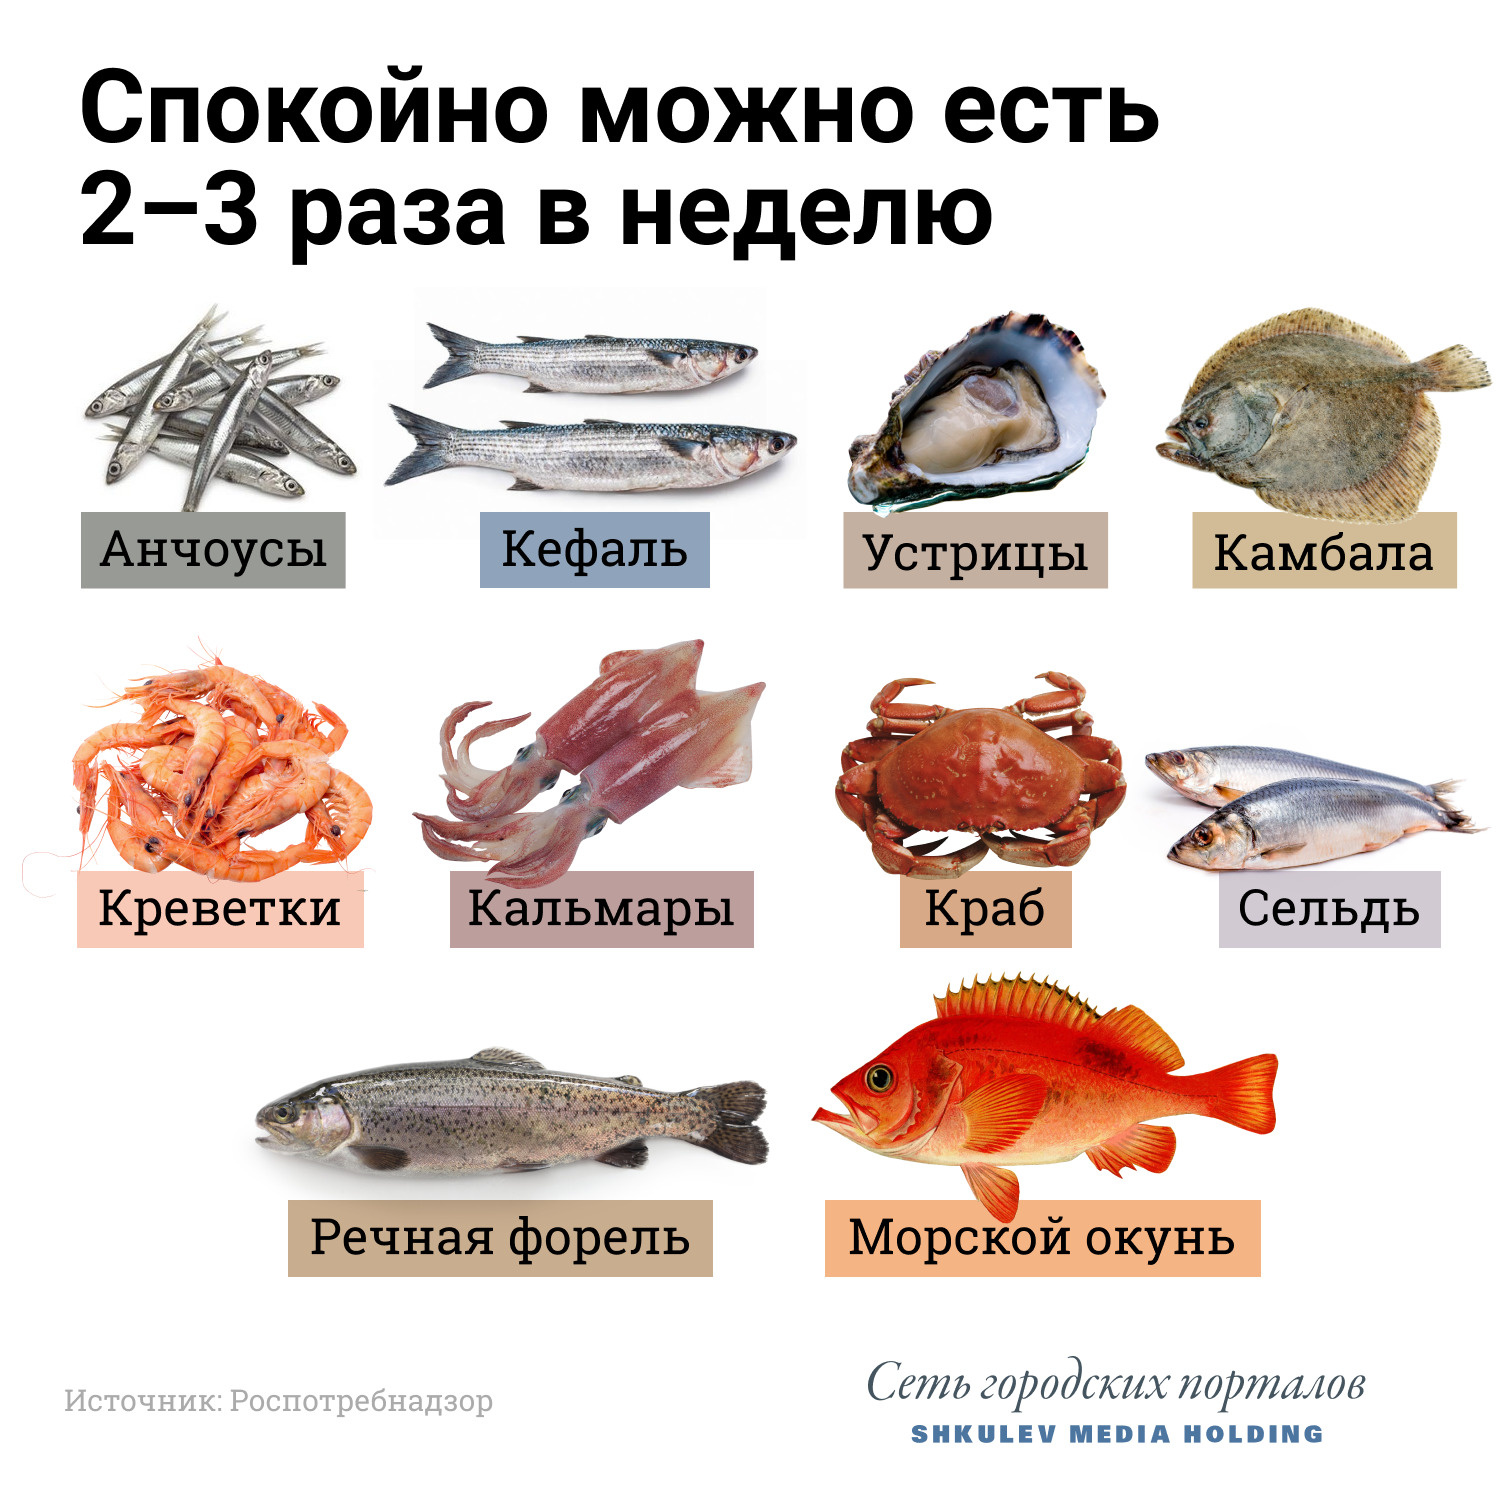 почему разные виды рыб откладывают разное количество икринок???? Ну почему???